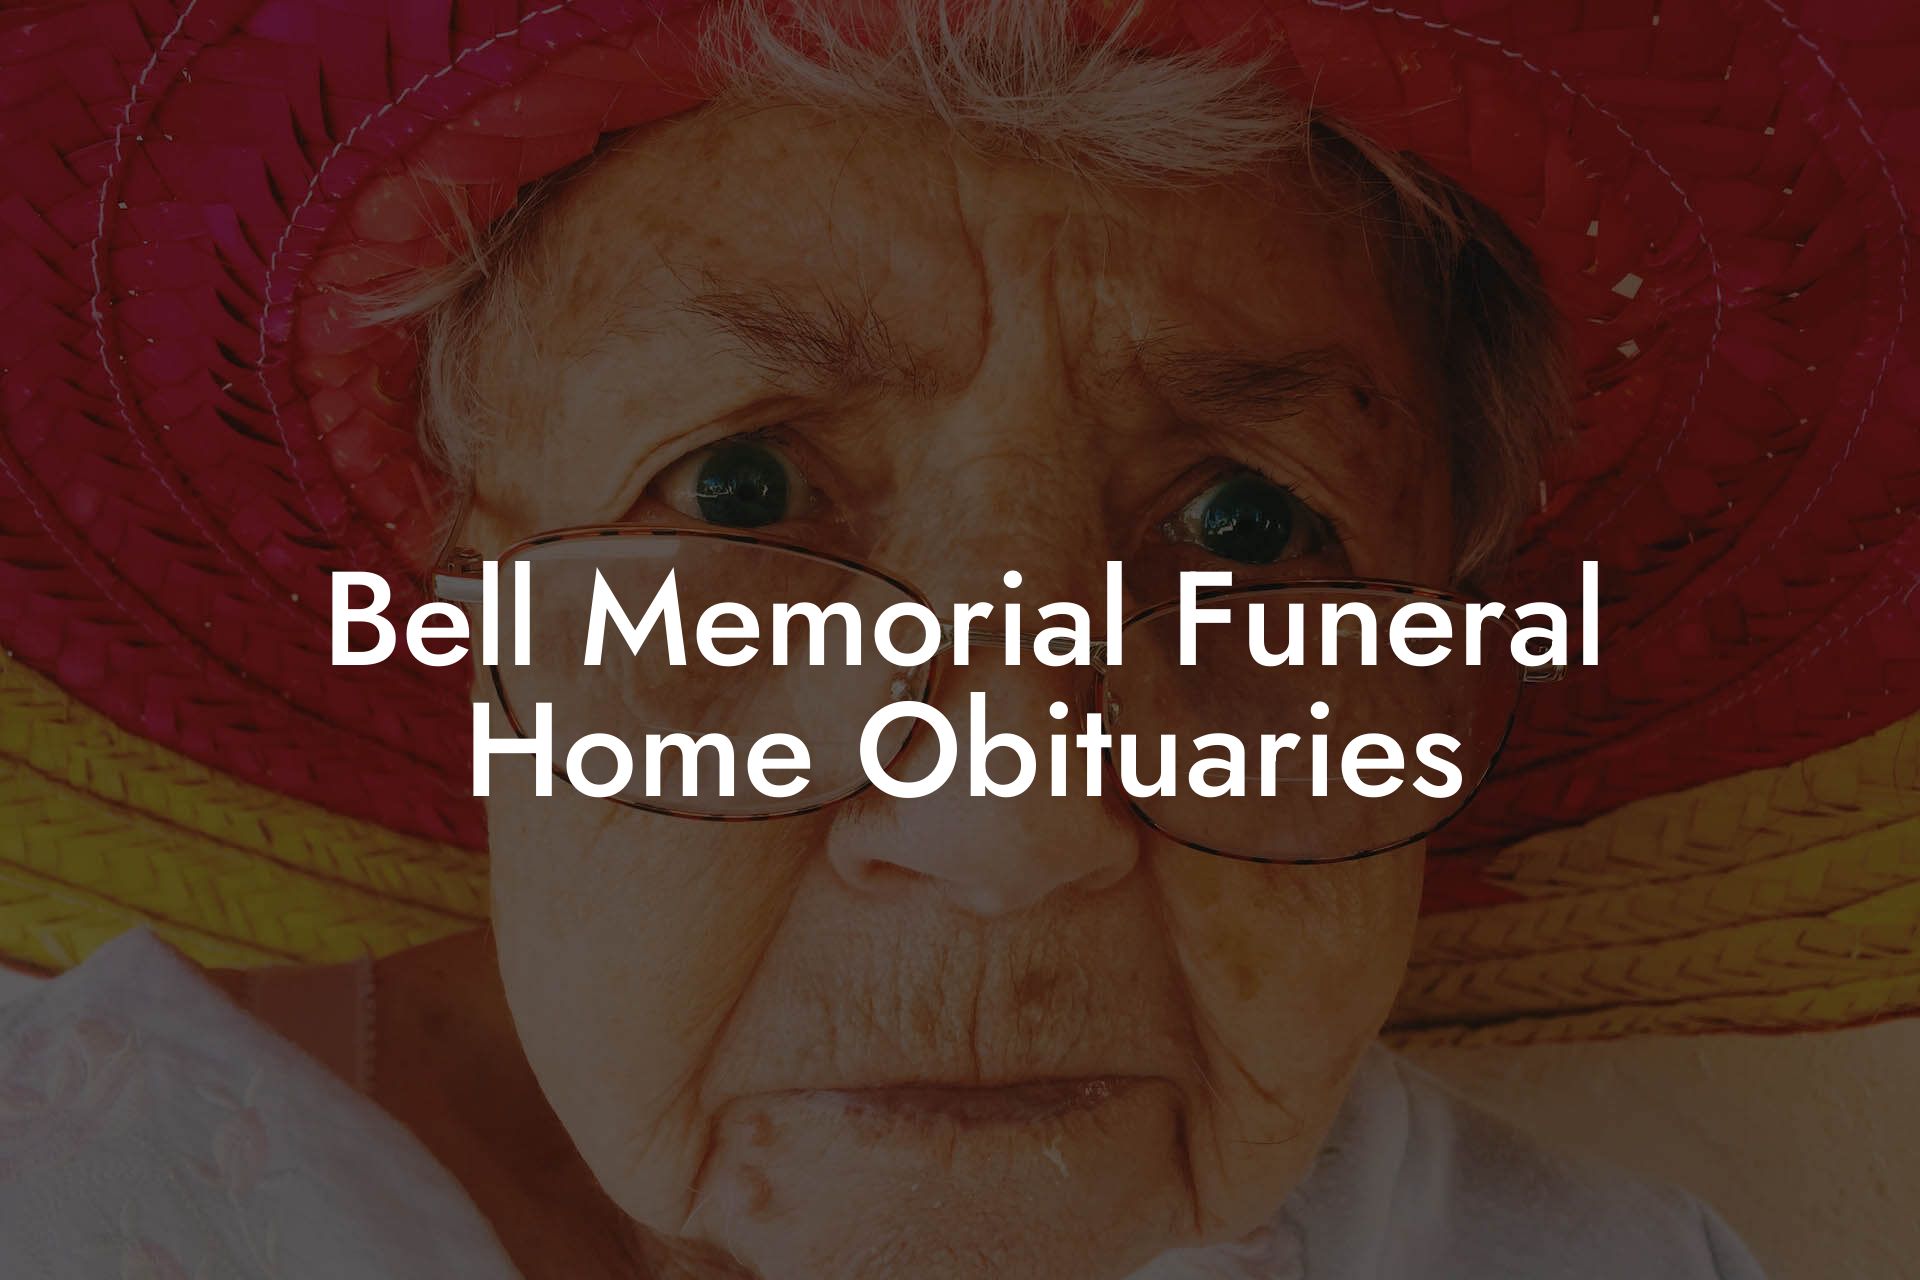 Bell Memorial Funeral Home Obituaries